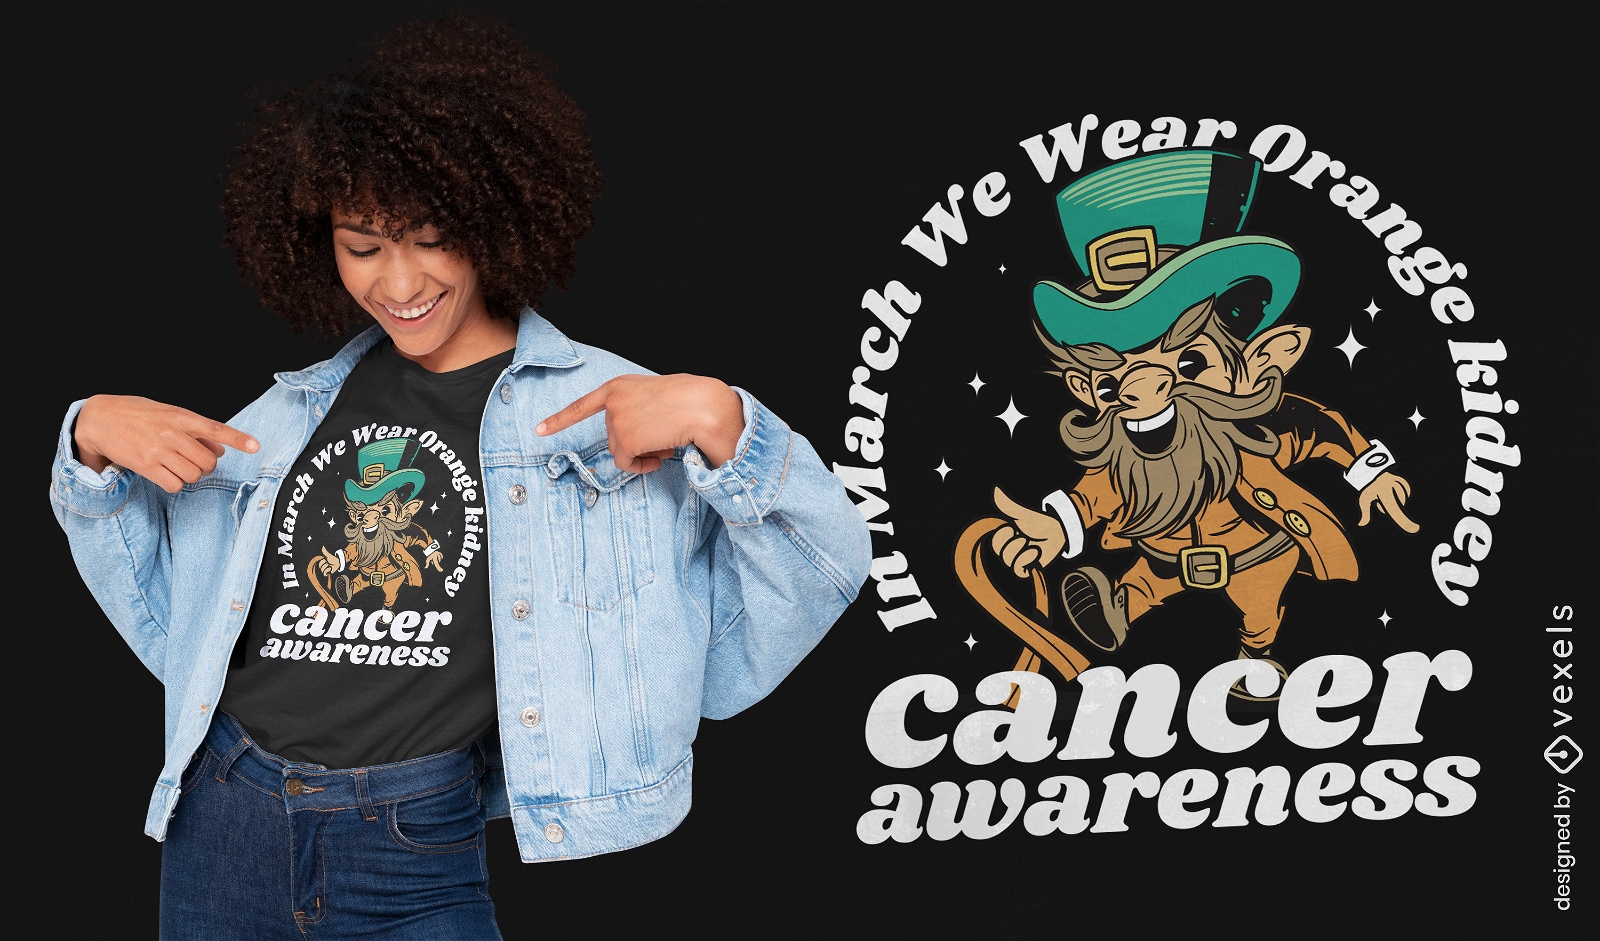 Leprechaun cancer awareness t-shirt design